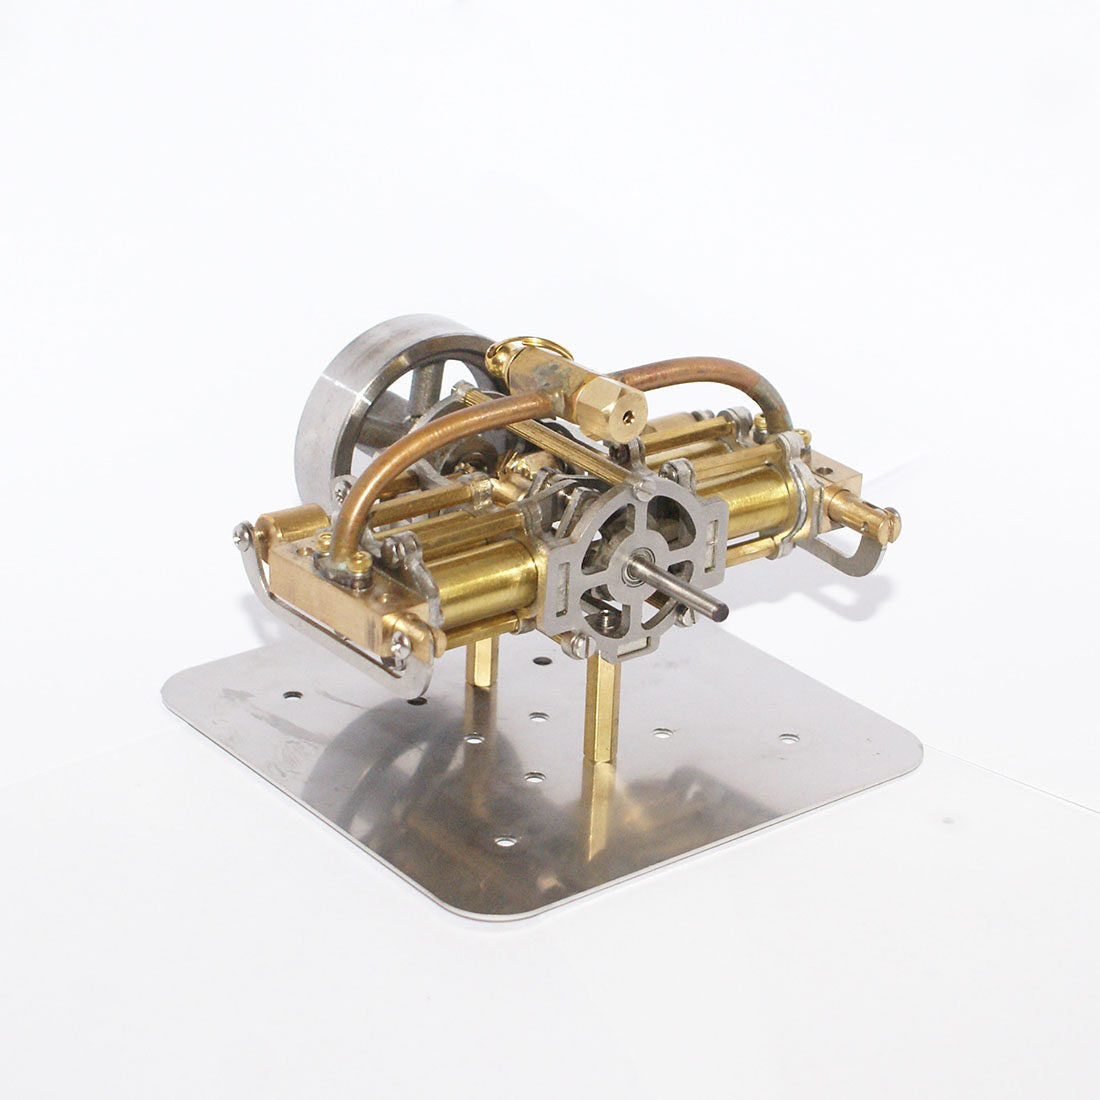 Miniatur-Dampfmaschinenmodell mit vier Zylindern in horizontaler Gegenüberstellung, ohne Kessel für Modellschiff-Geschenksammlung 6